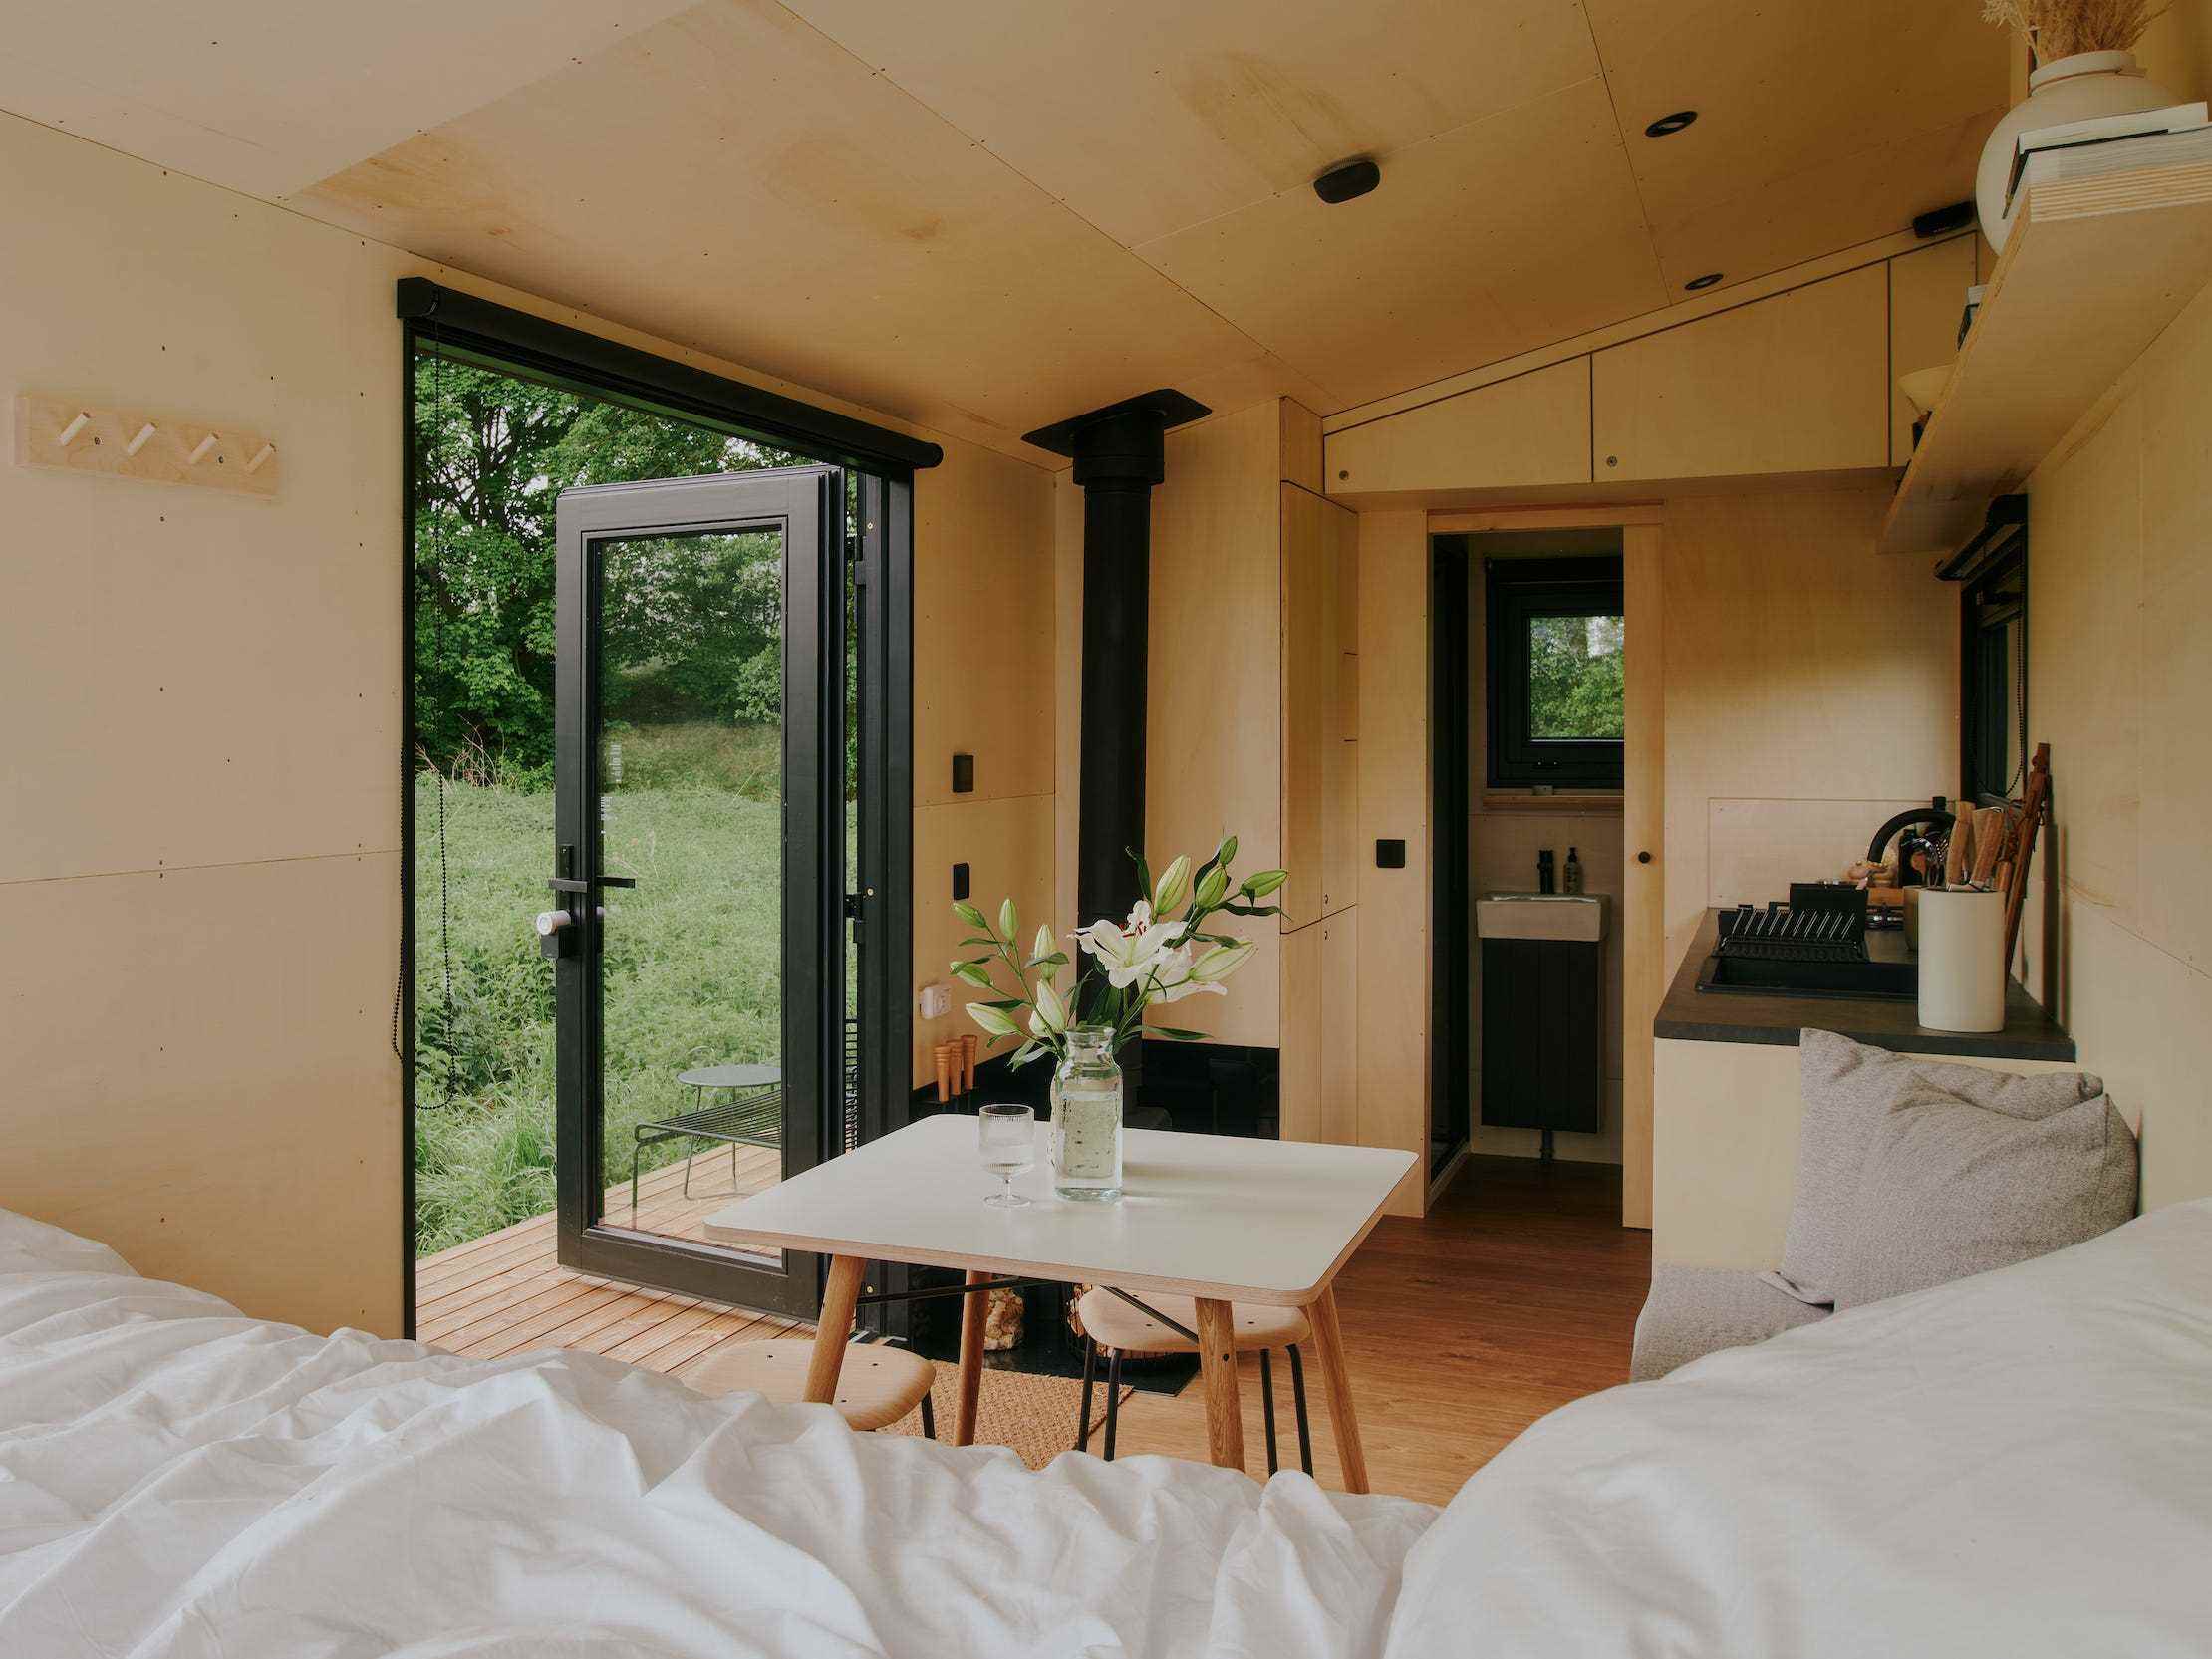 Blick in eine Raus-Hütte mit Bett, Esstisch, Küche, Fenster mit Blick in die Natur.